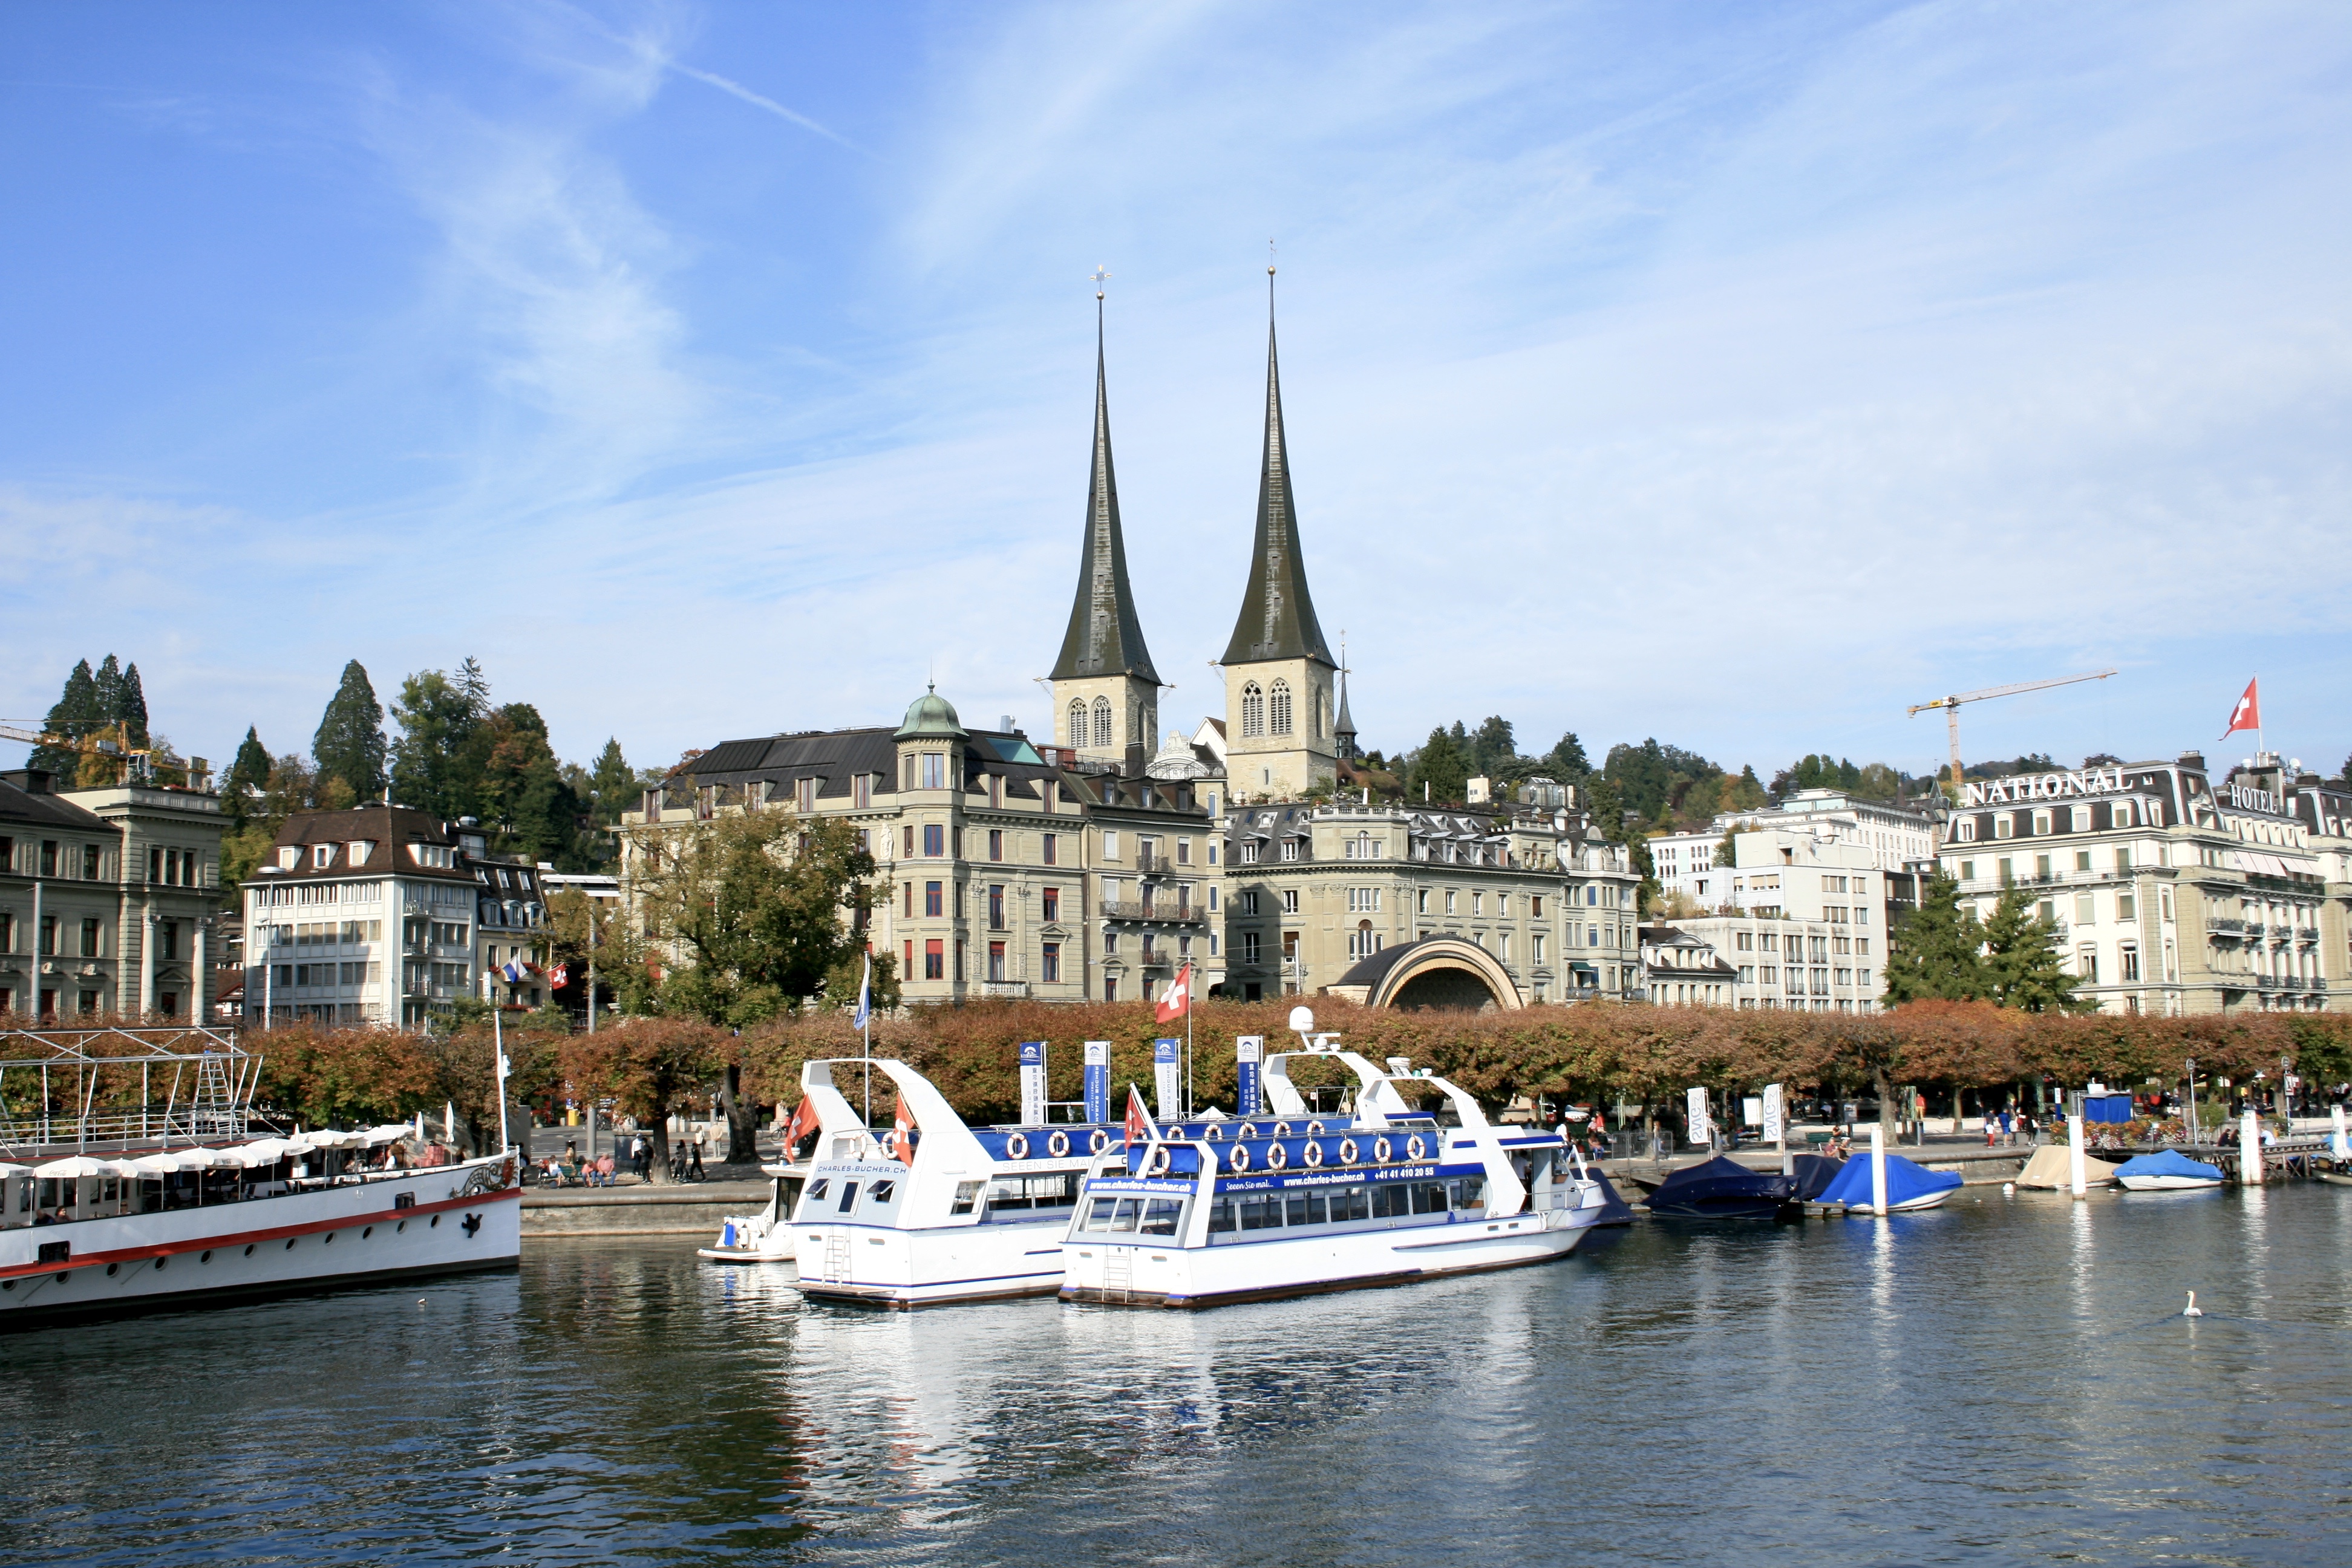 Old Lucerne from Lake Lucerne